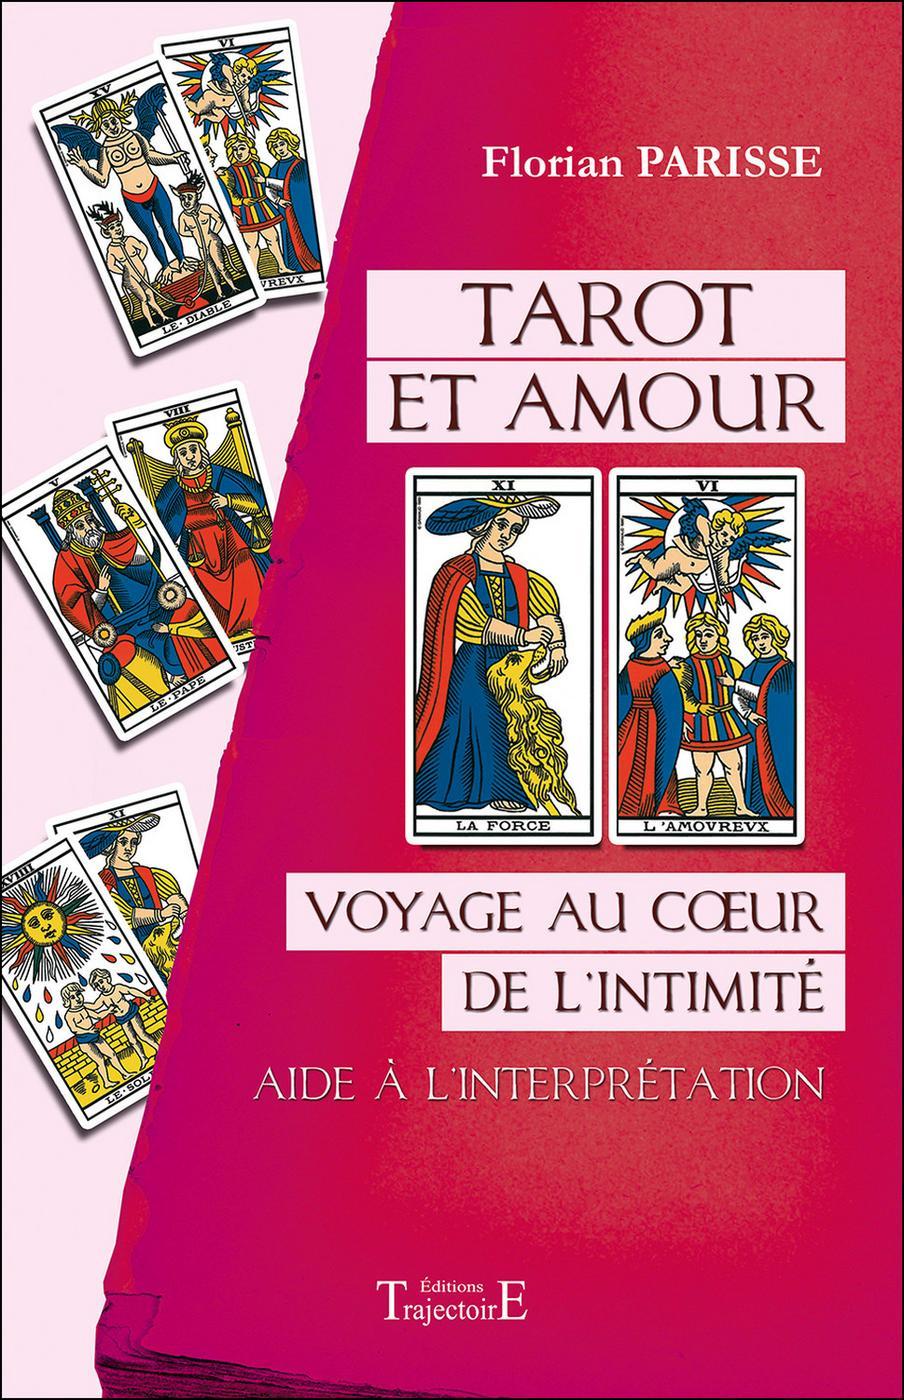 Tarot de l'Amour (tarot)